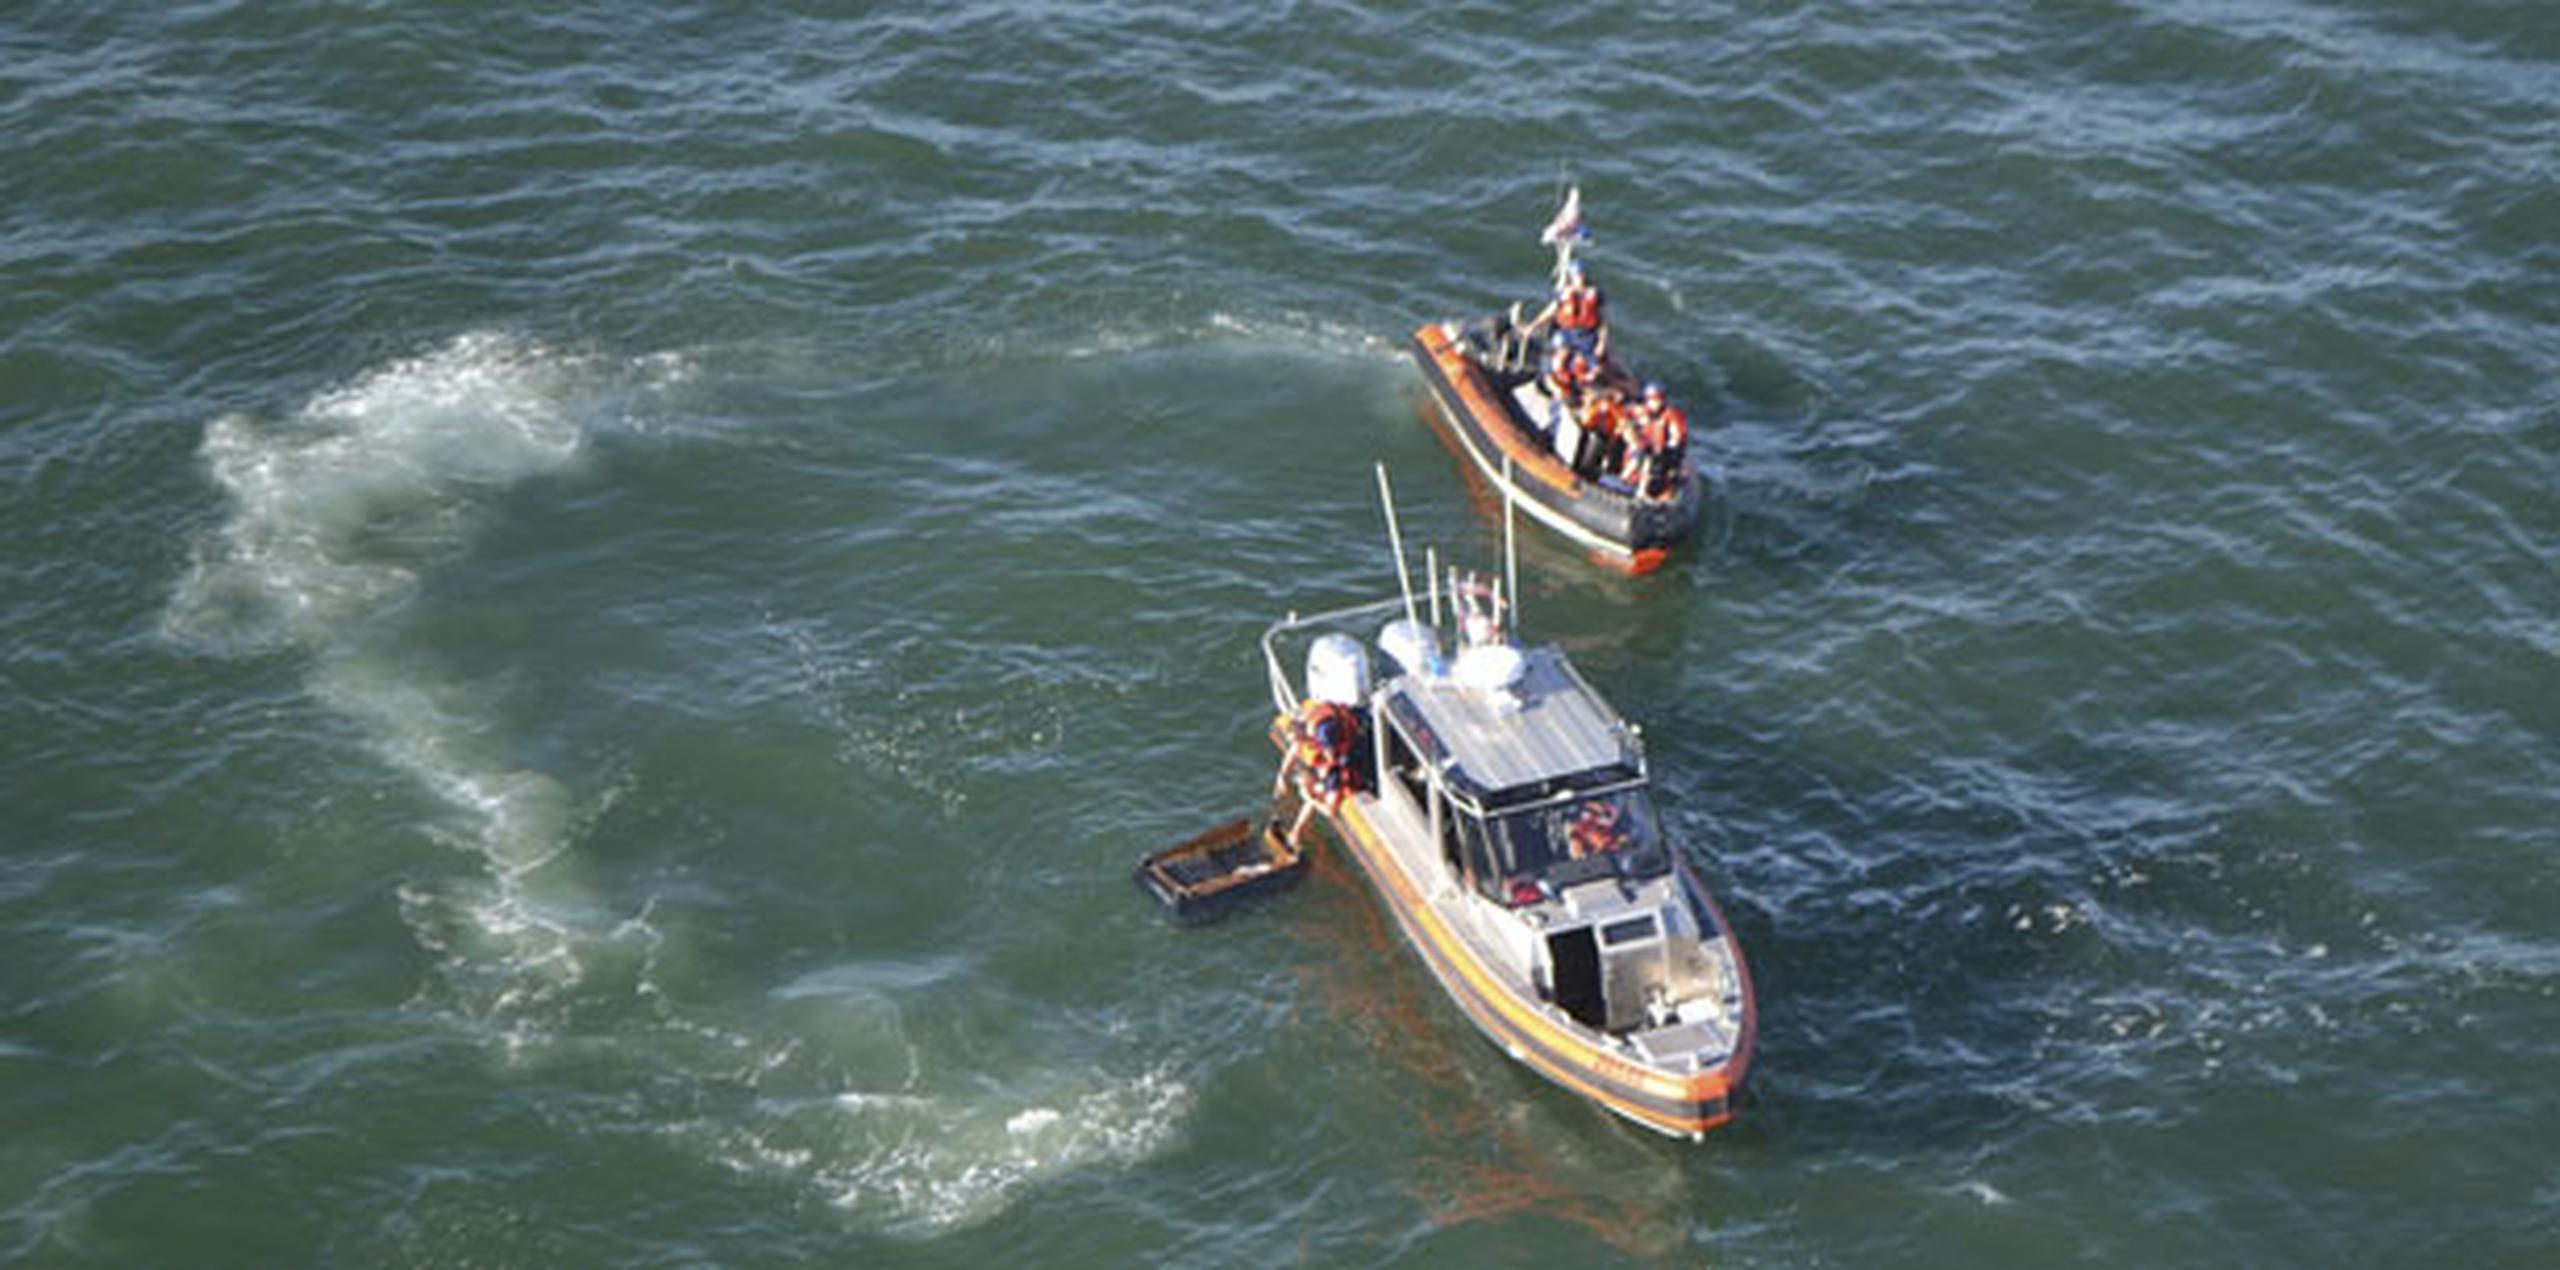 El velero de 34 pies llamado Khaleesi transportaba 27 adultos y tres niños cuando zozobró por razones aún desconocidas la tarde del sábado. (AP)